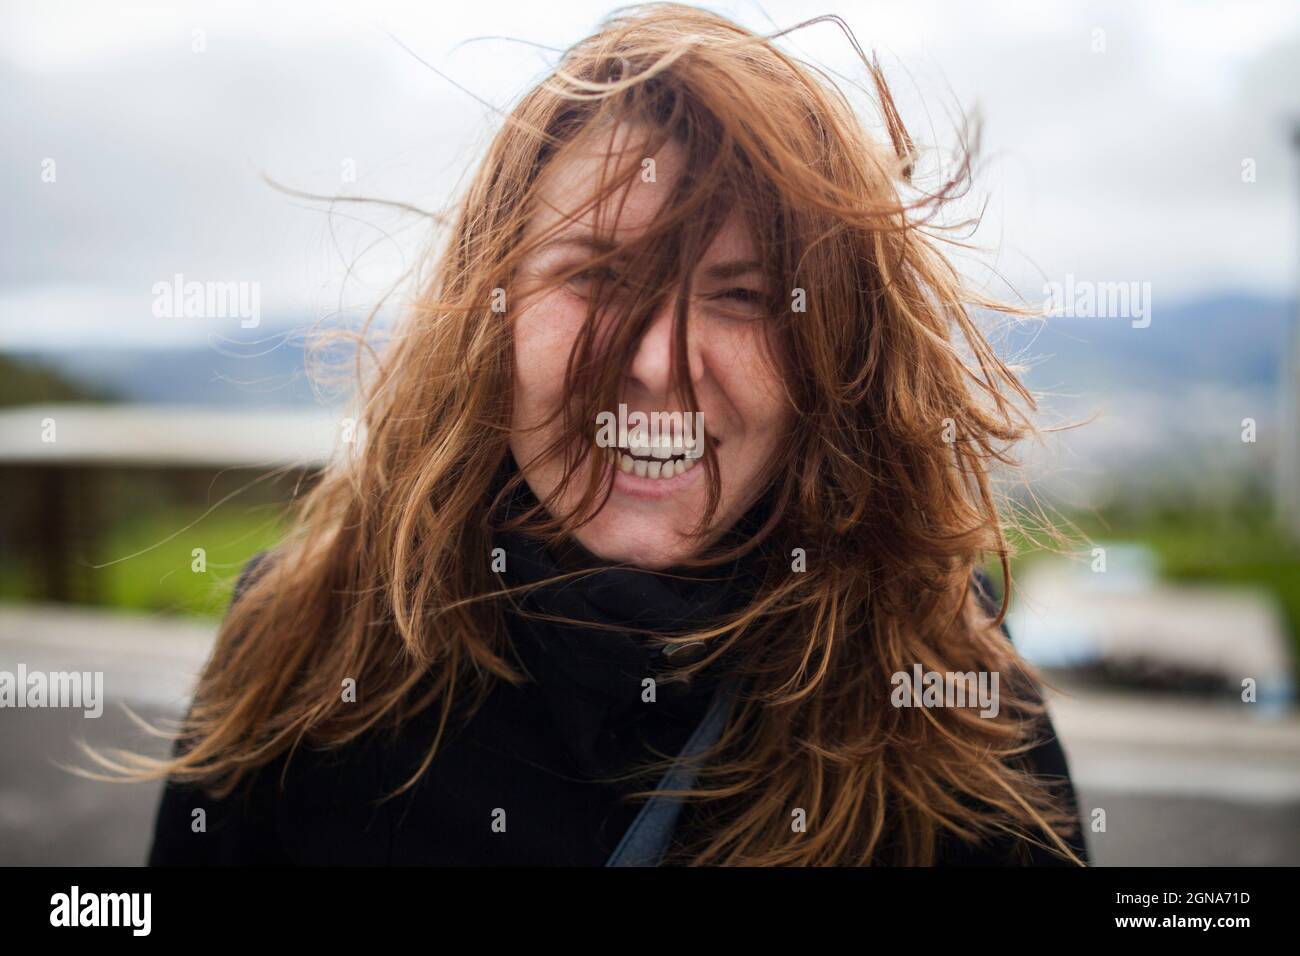 Schönes Mädchen lächelnd chaotisch Haar Fokus Touren Tiefe des Feldes windigen Berge glücklich Stockfoto